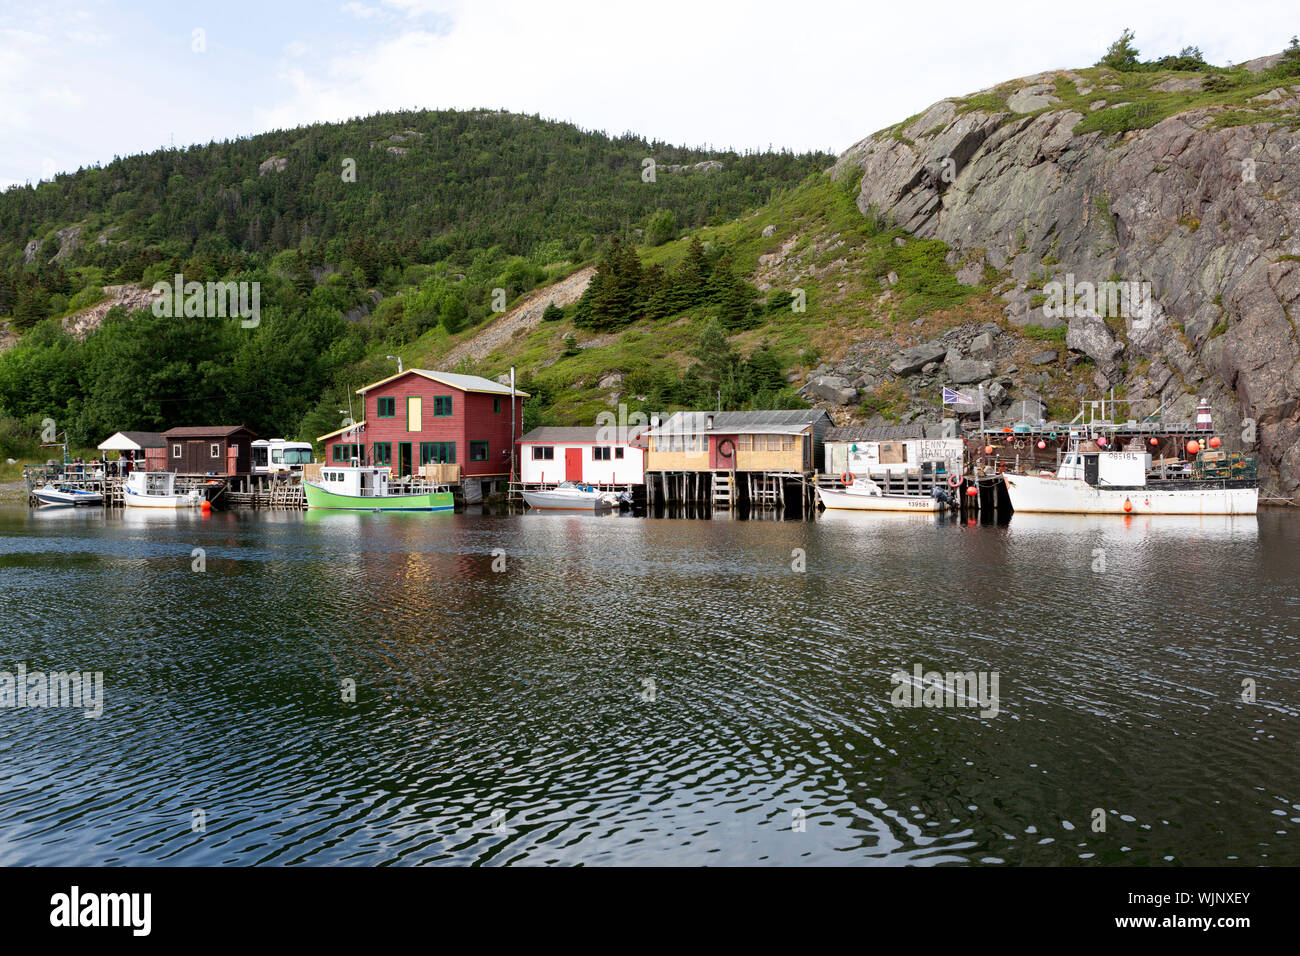 Hütten und Boote bei Quidi Vidi Hafen in Neufundland und Labrador, Kanada. Quidi Vidi Village ist ein Stadtteil von St. John's. Stockfoto